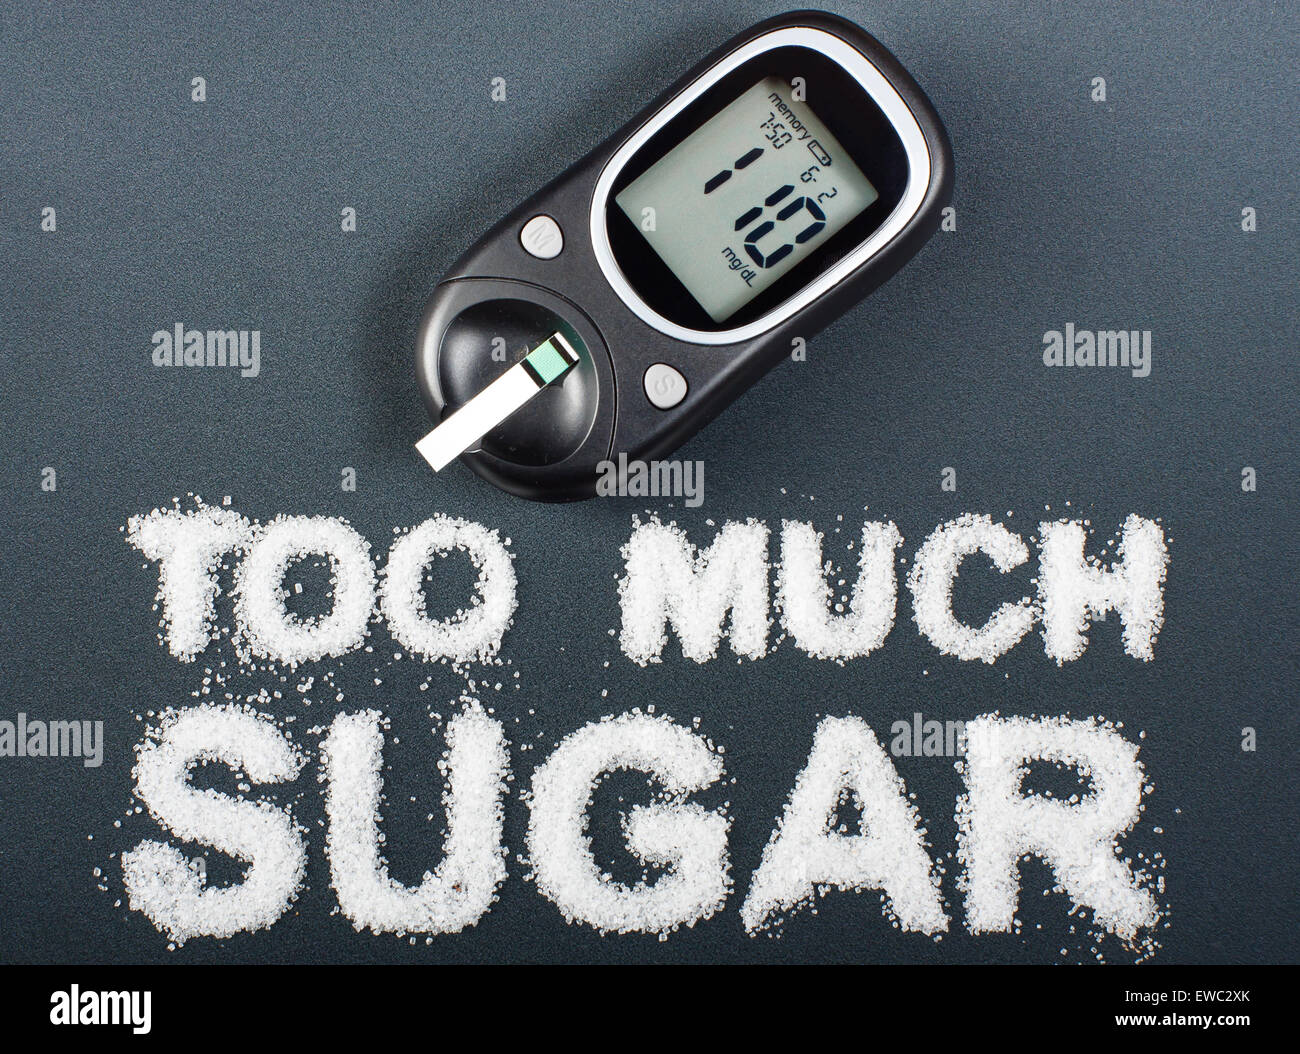 Unhealthy food concept - sugar Stock Photo